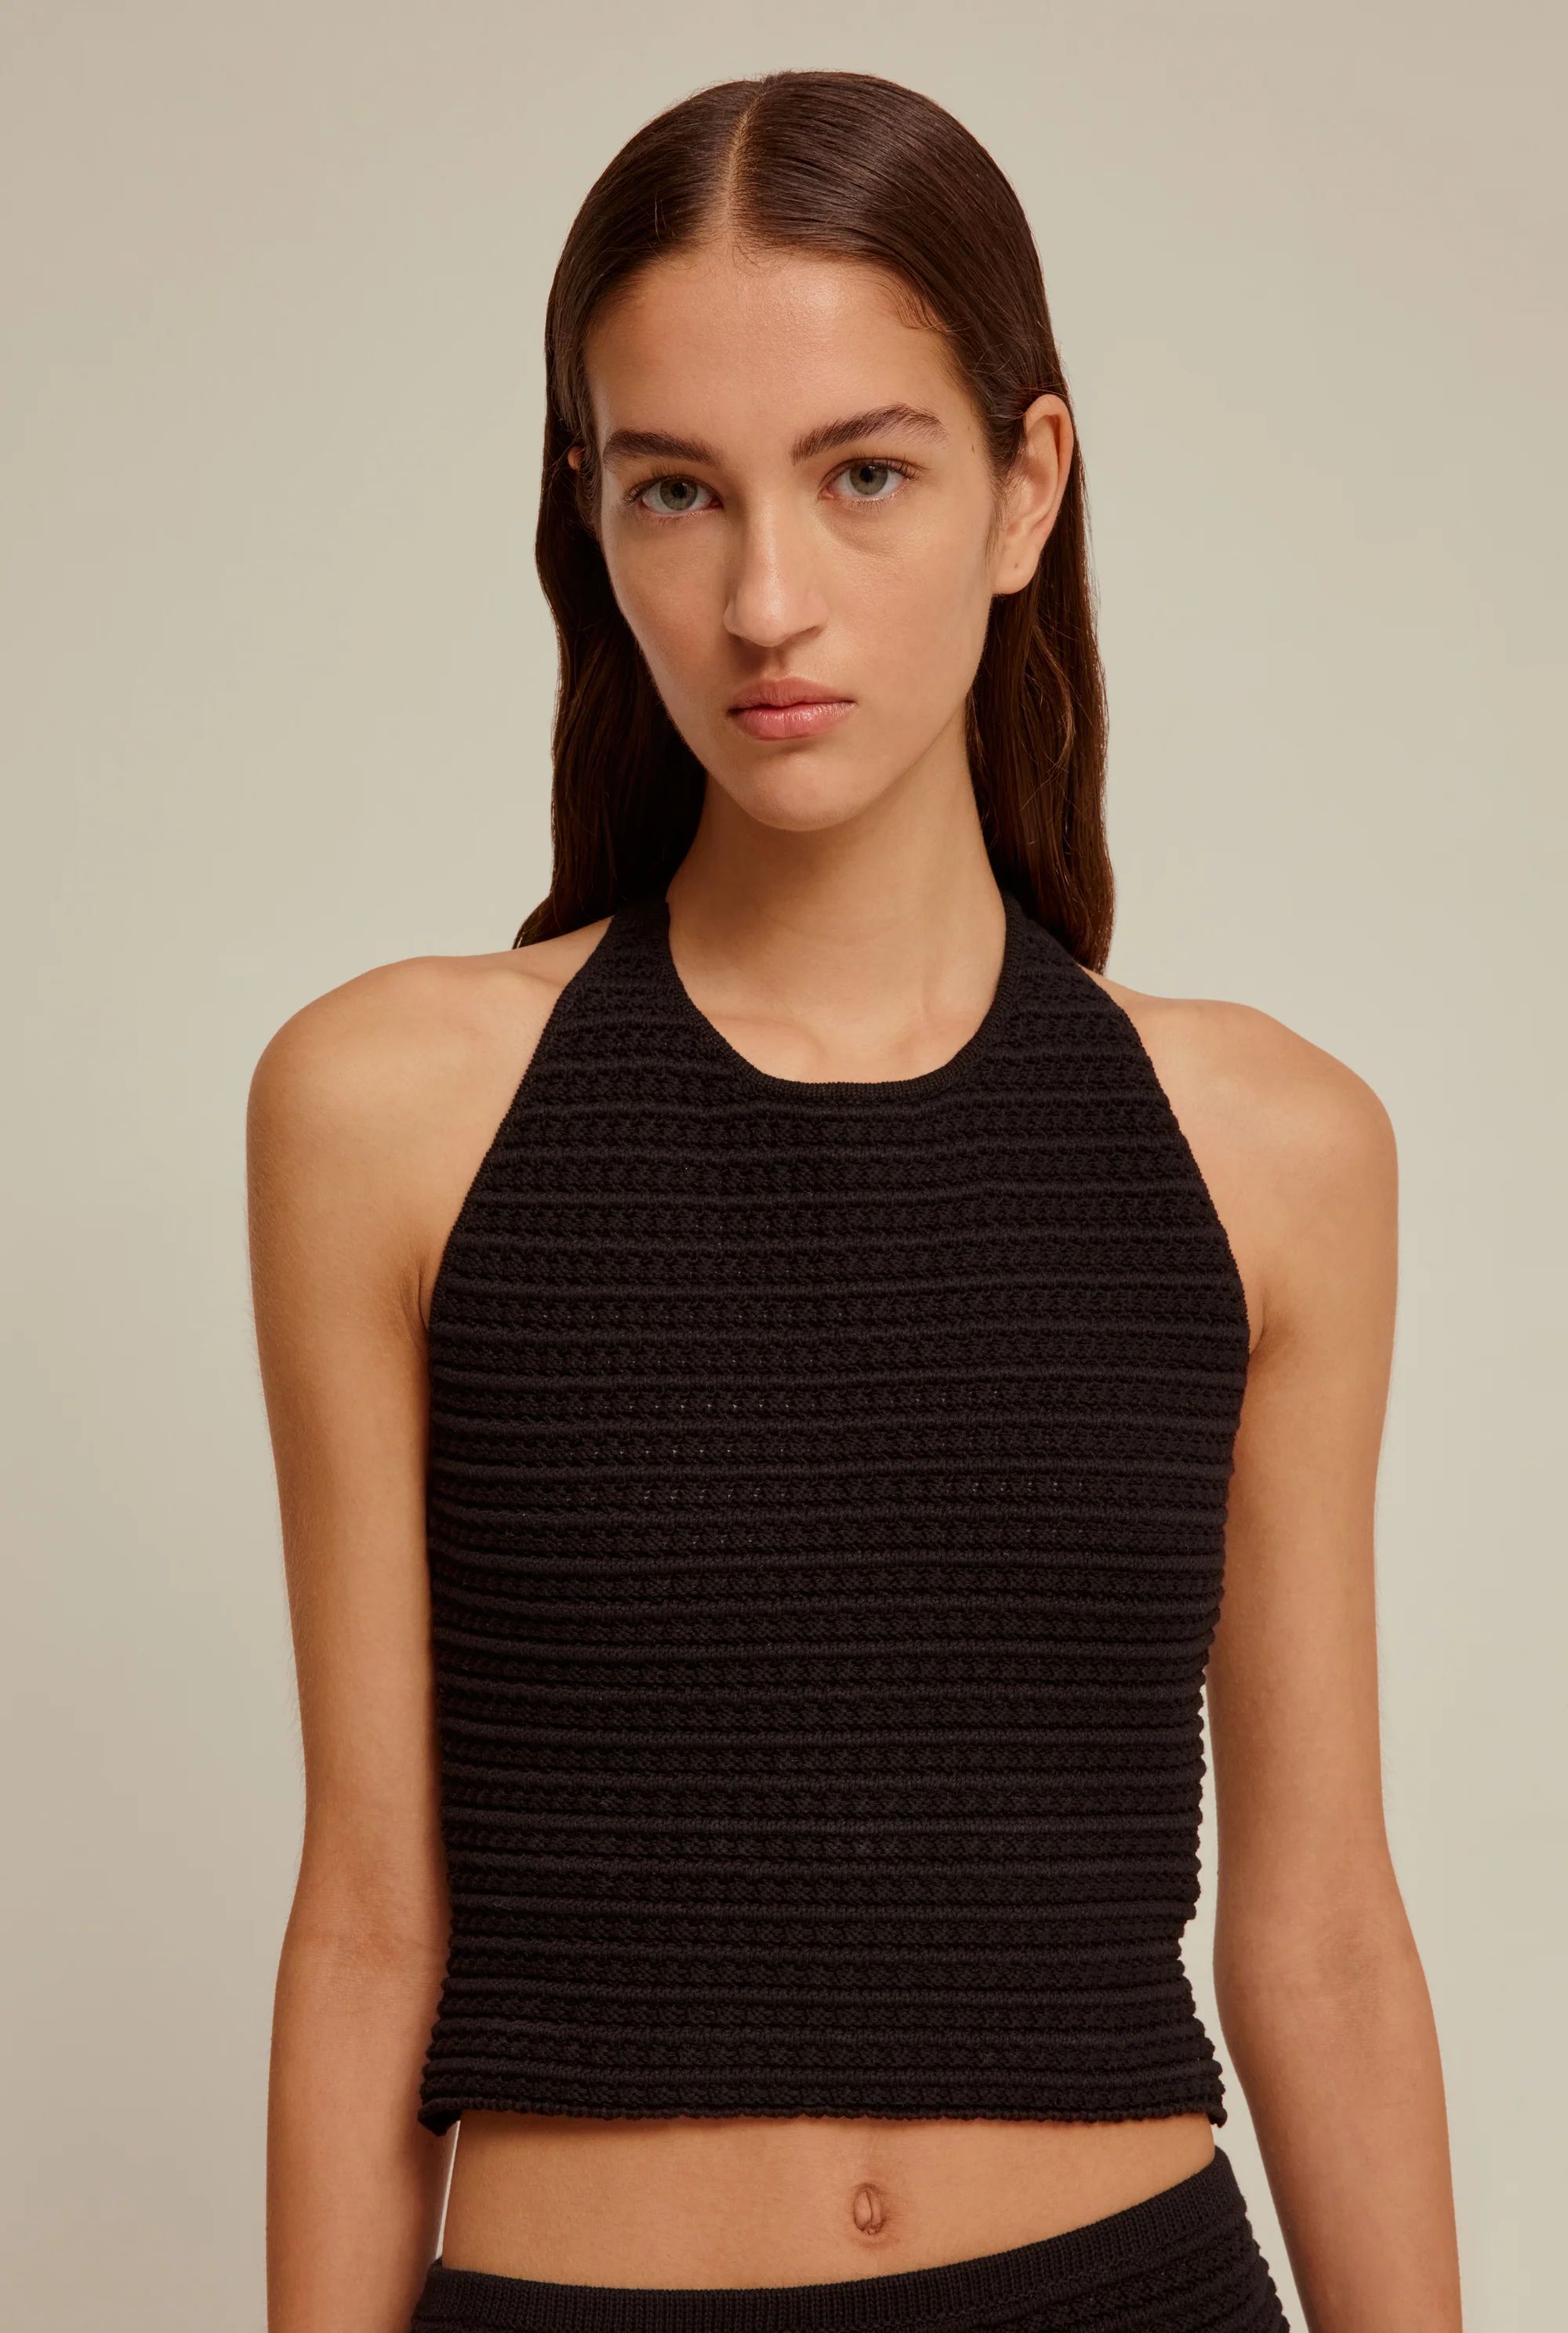 Venroy - Womens Crochet Halter Neck Top in Black | Venroy | Premium Leisurewear designed in Austr... | Venroy AU